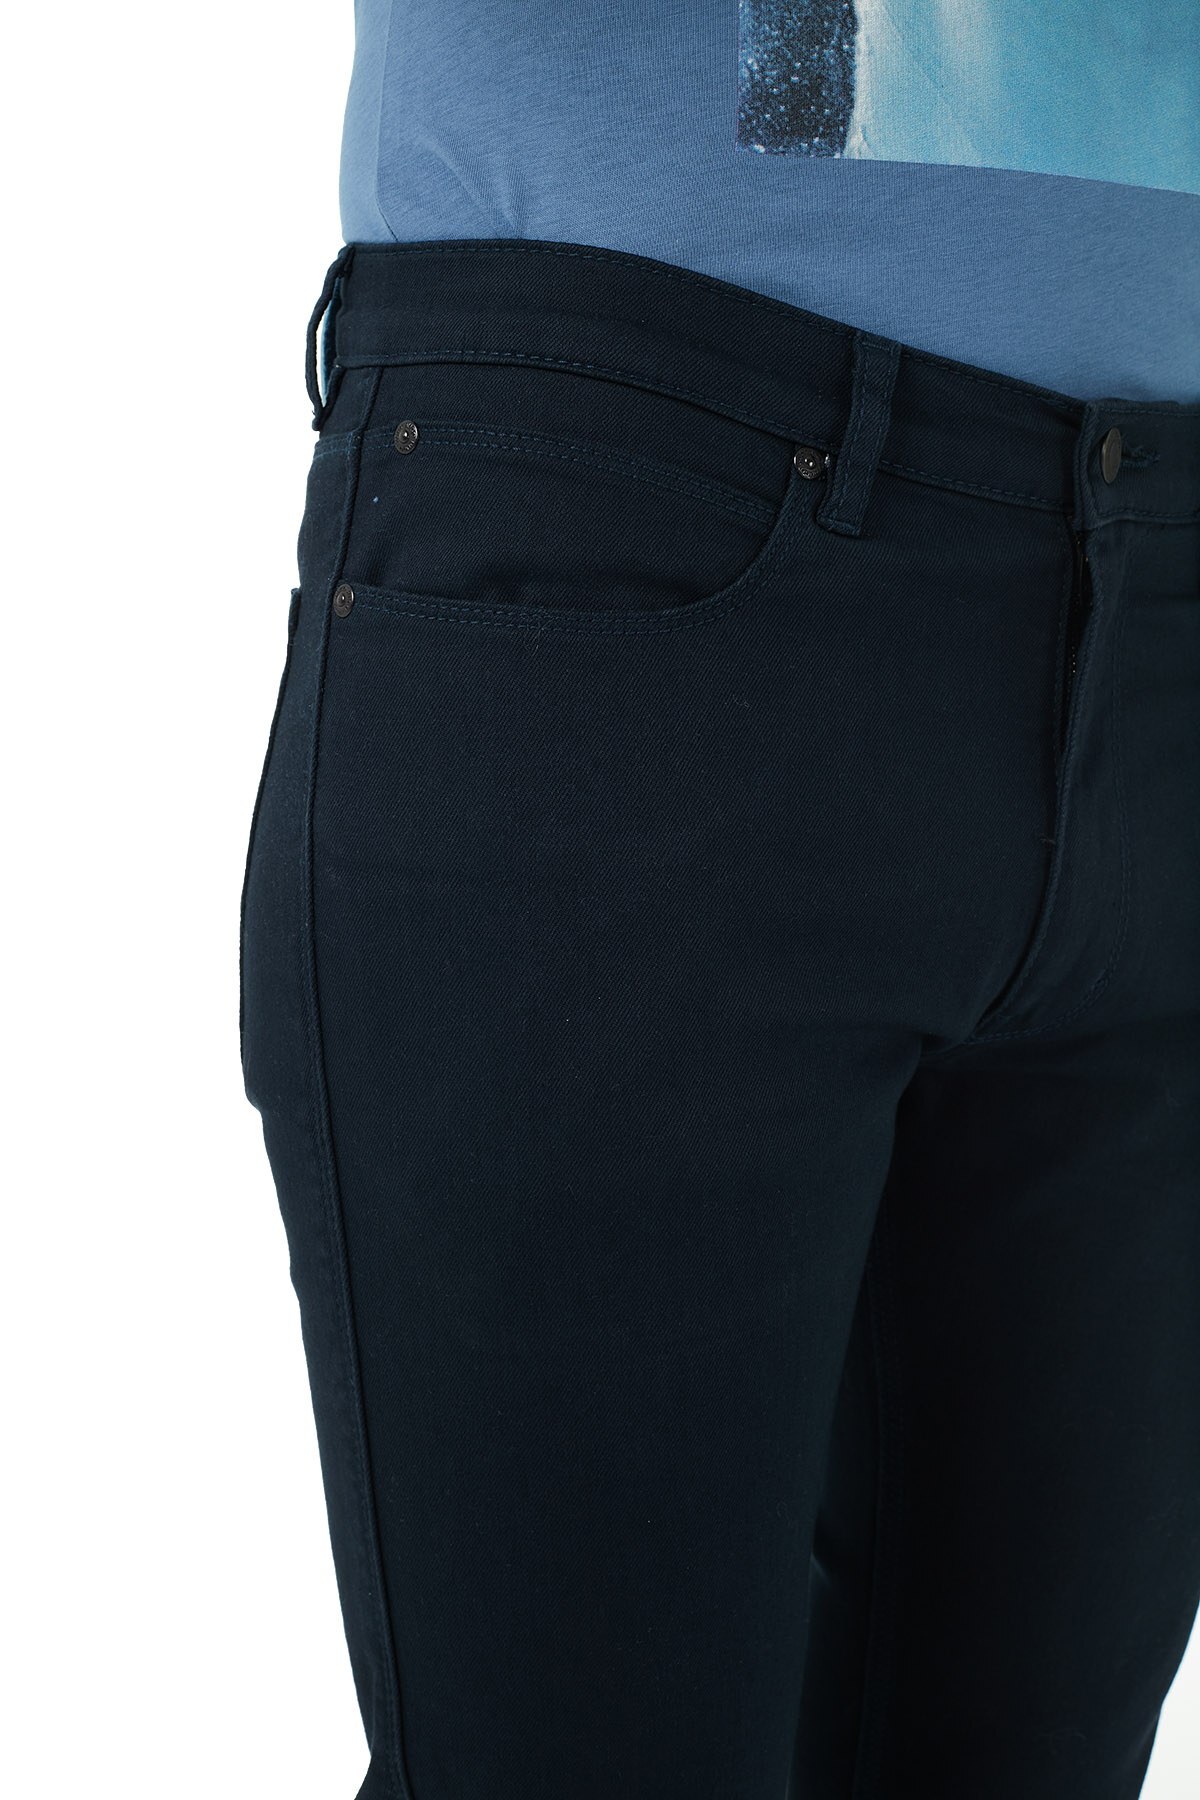 Hugo Boss Pamuklu Extra Slim Fit Jeans Erkek Kot Pantolon 50446977 414 LACİVERT